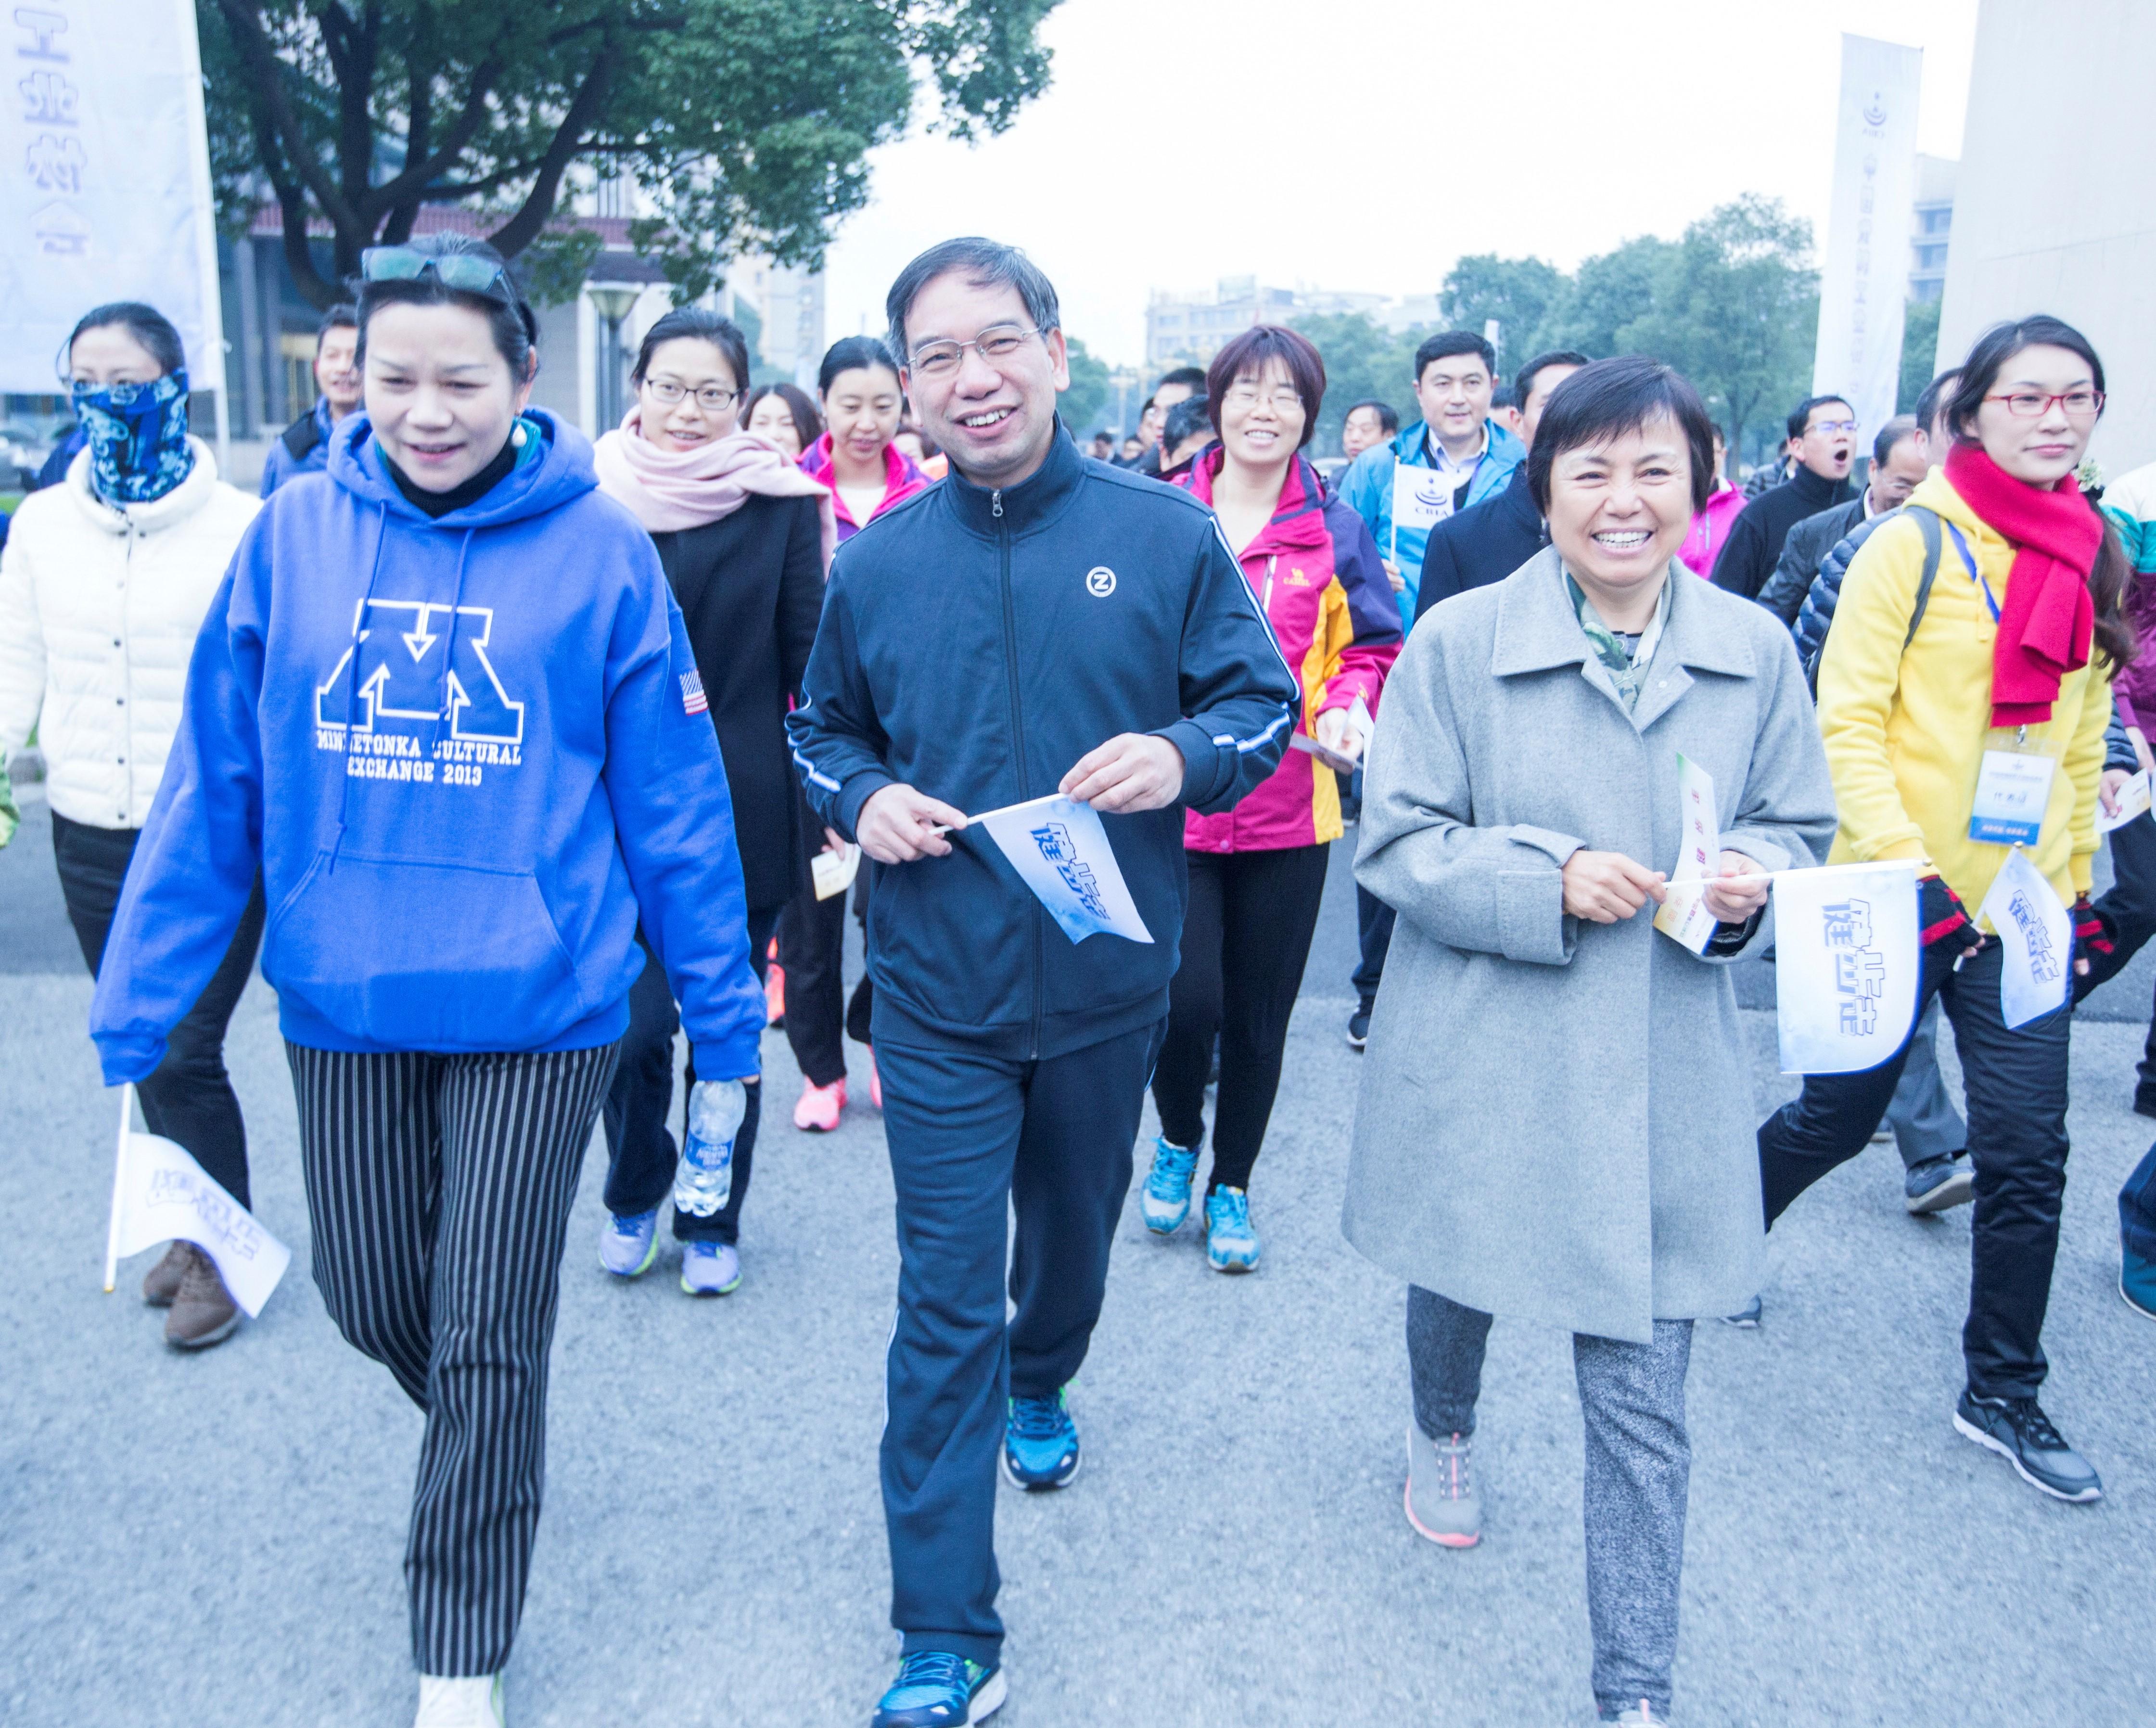 8、2016年11月25日“2016中国饮料行业健步走”活动在张家港举行